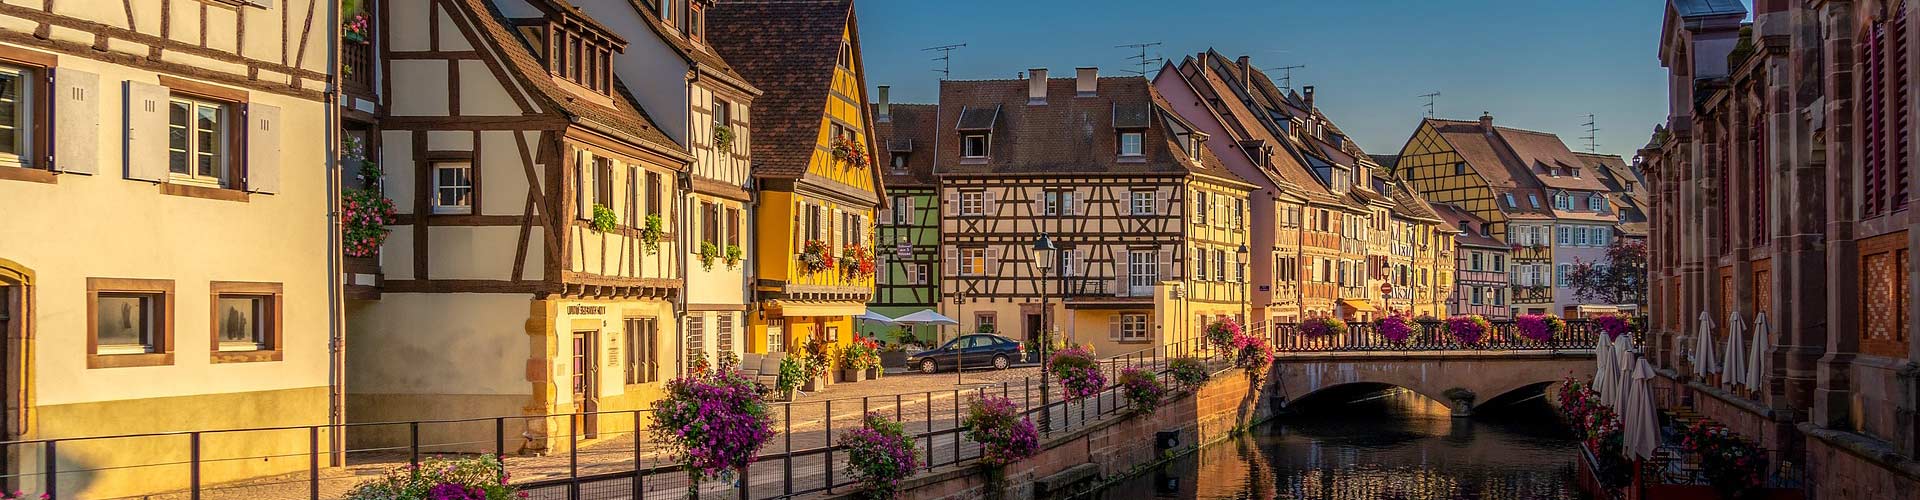 Rue typique de Colmar en Alsace